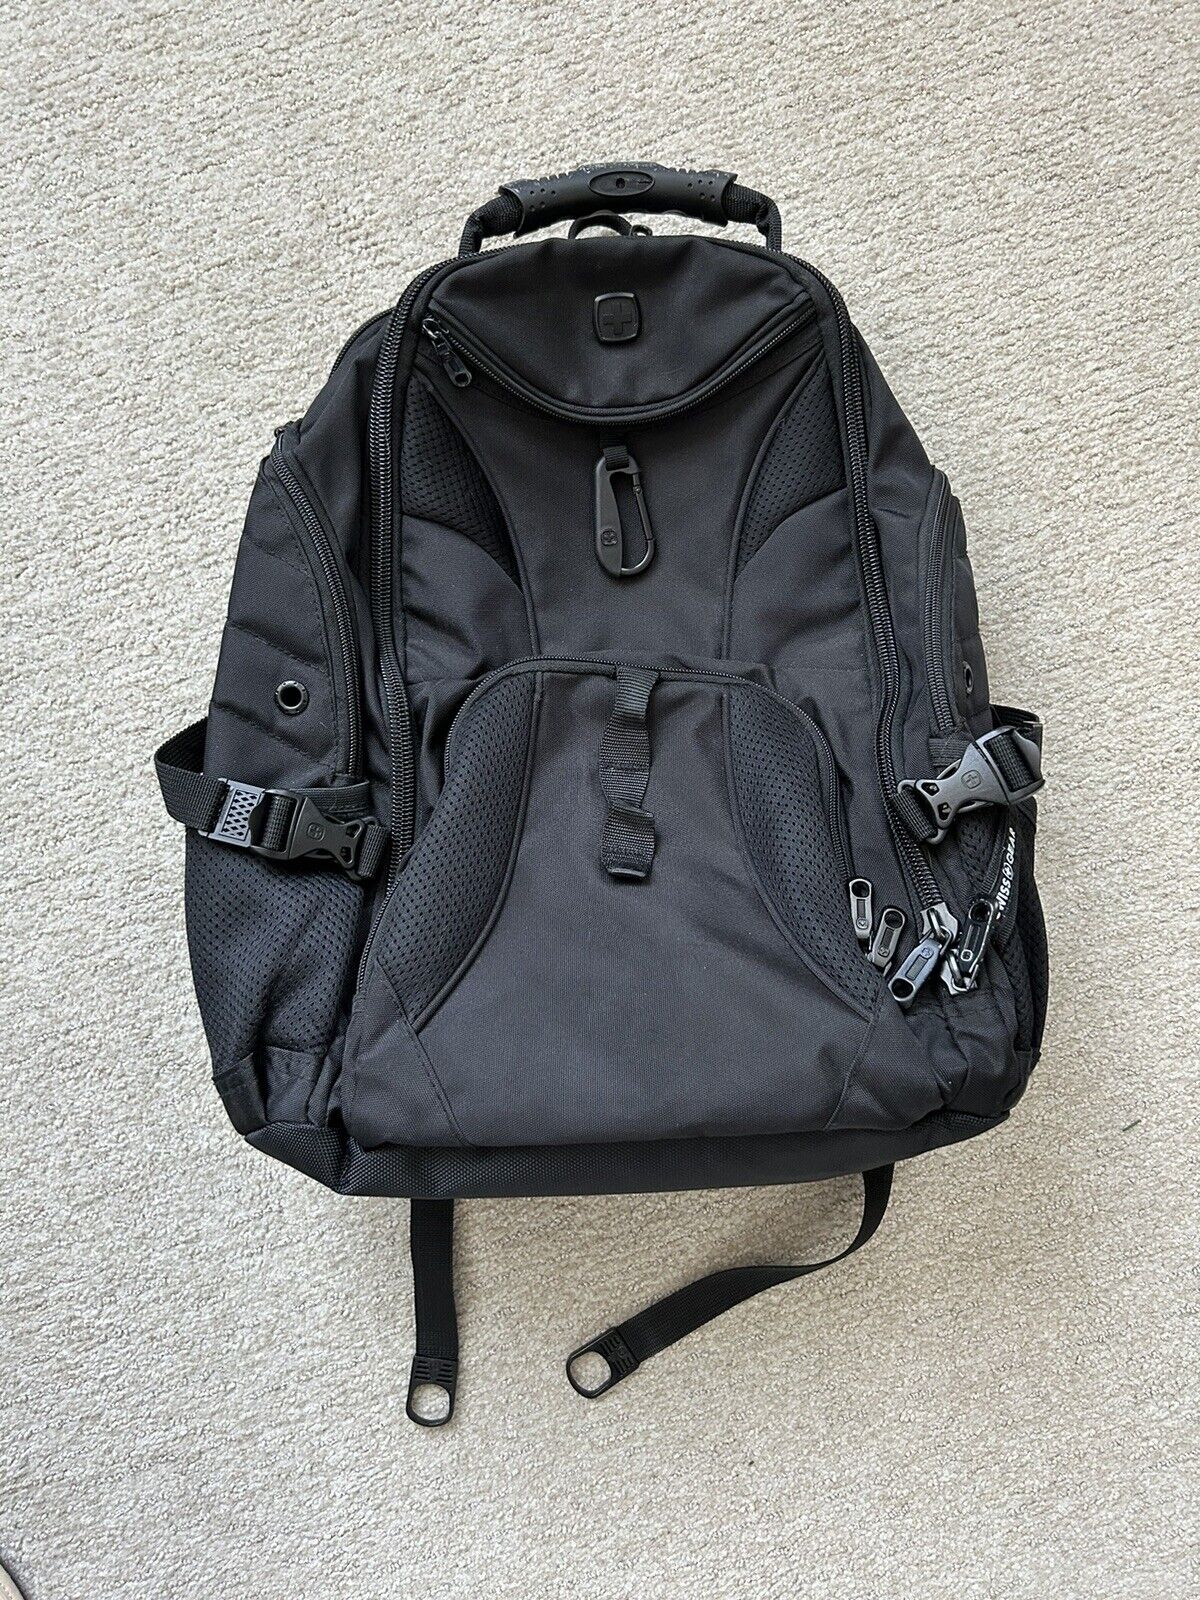 SWISSGEAR Travel Gear 1900 ScanSmart TSA Laptop Backpack - Black